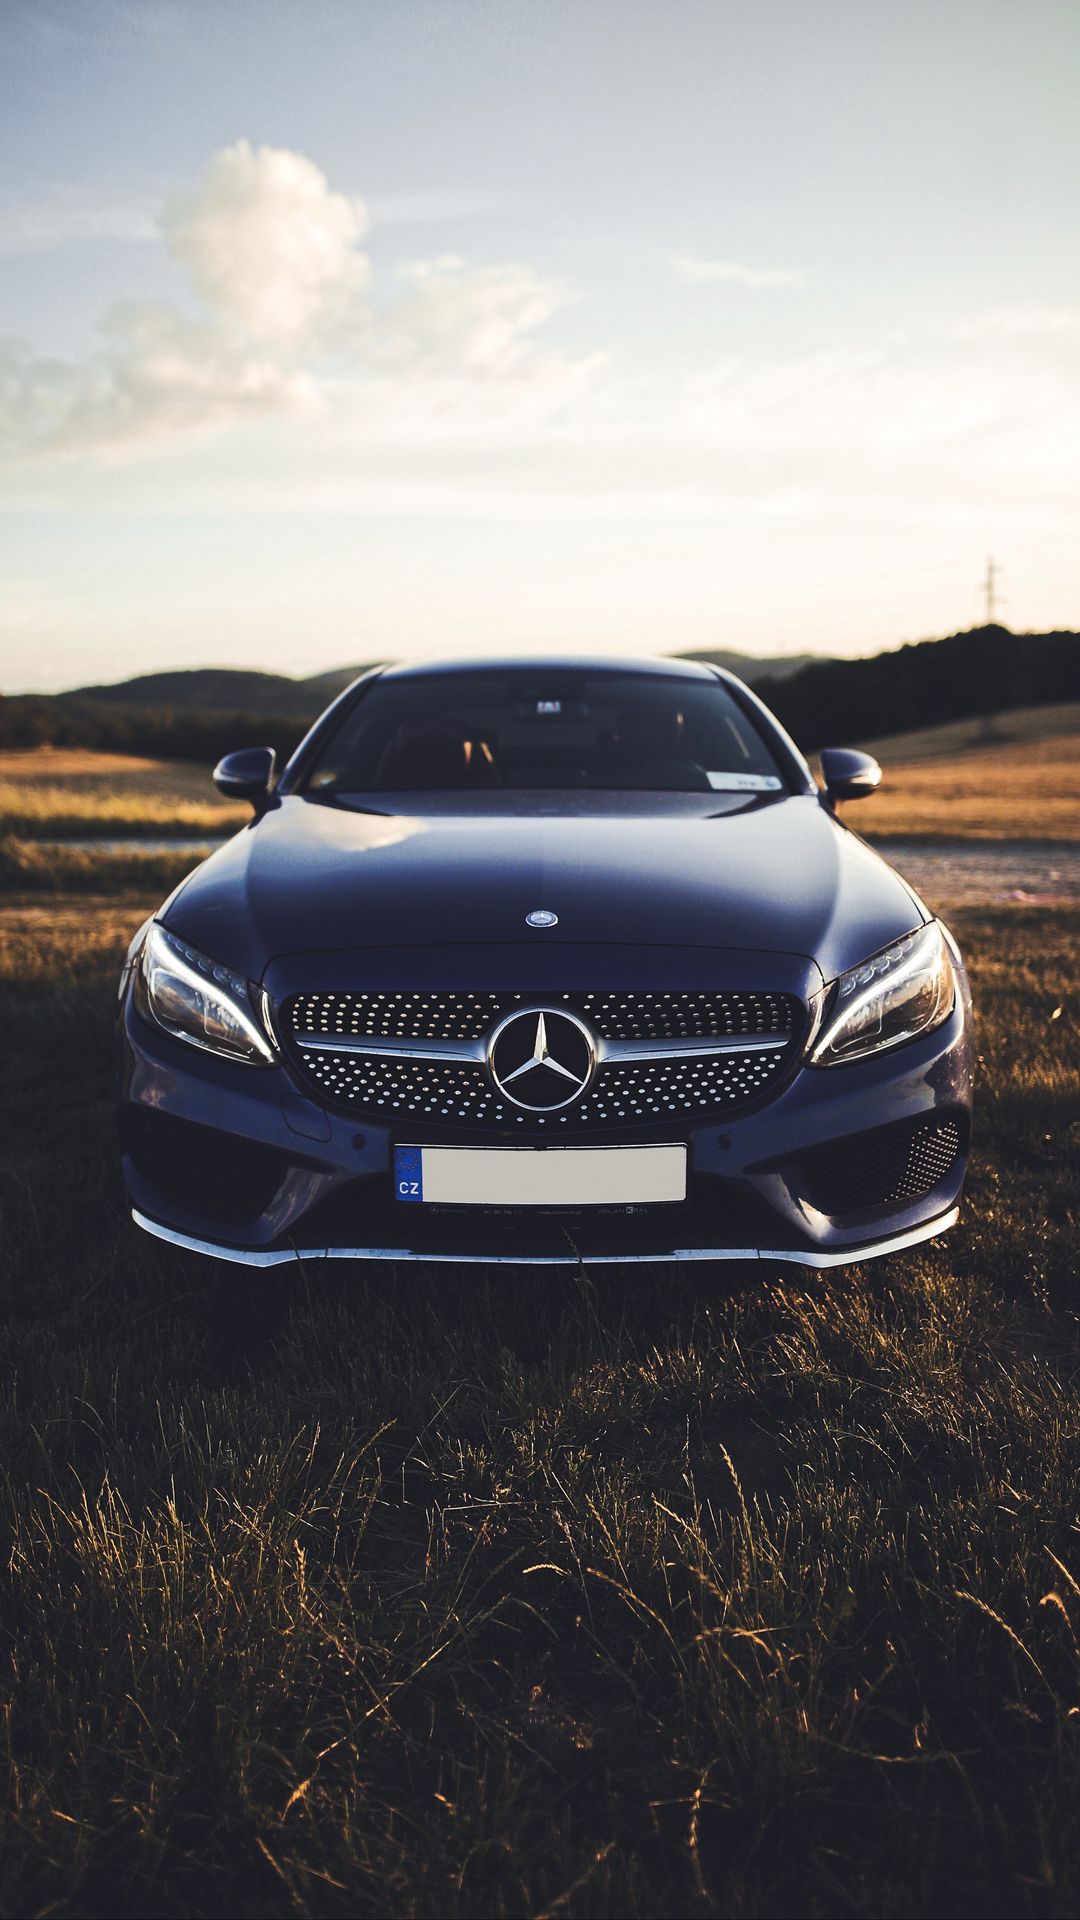 Mercedes-Benz CLS-Class là một biểu tượng của sự sang trọng và đẳng cấp. Với thiết kế ấn tượng và đầy cảm hứng, chiếc xe này chắc chắn sẽ khiến bạn bị thu hút. Xem hình ảnh liên quan đến từ kho ảnh qúy giá này để trải nghiệm cảm giác sang trọng và thú vị. 